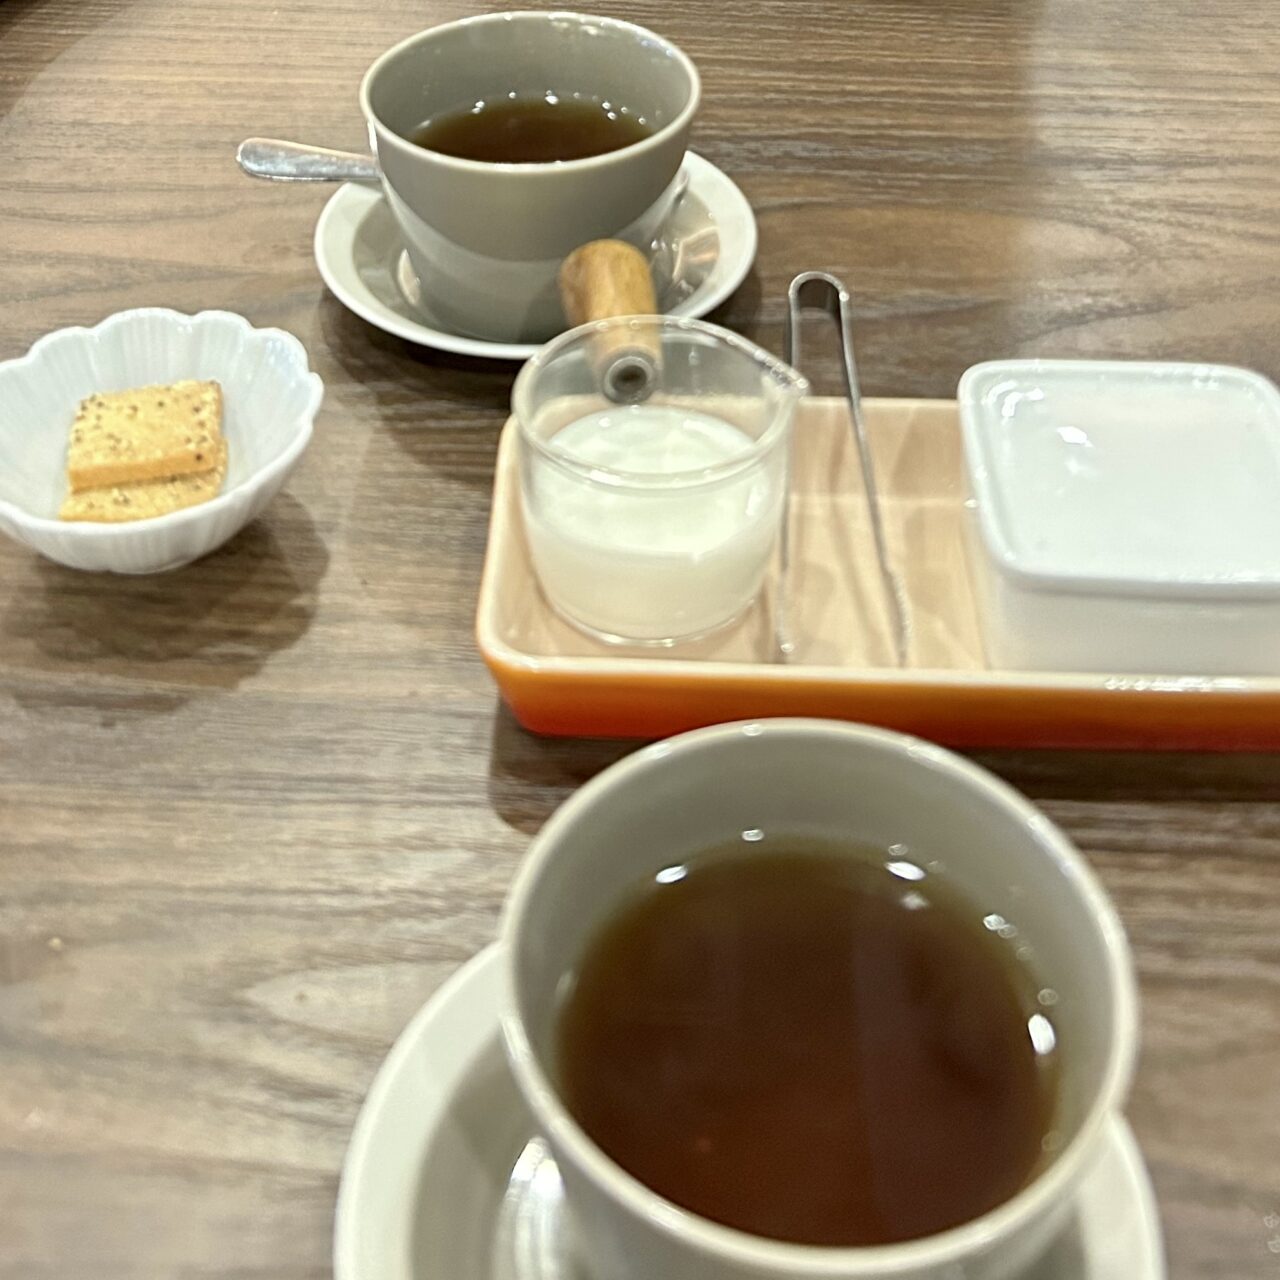 大阪・帝塚山にある和洋折衷の創作料理「Genji(源氏)」の弁当10品の紅茶とクッキーです。